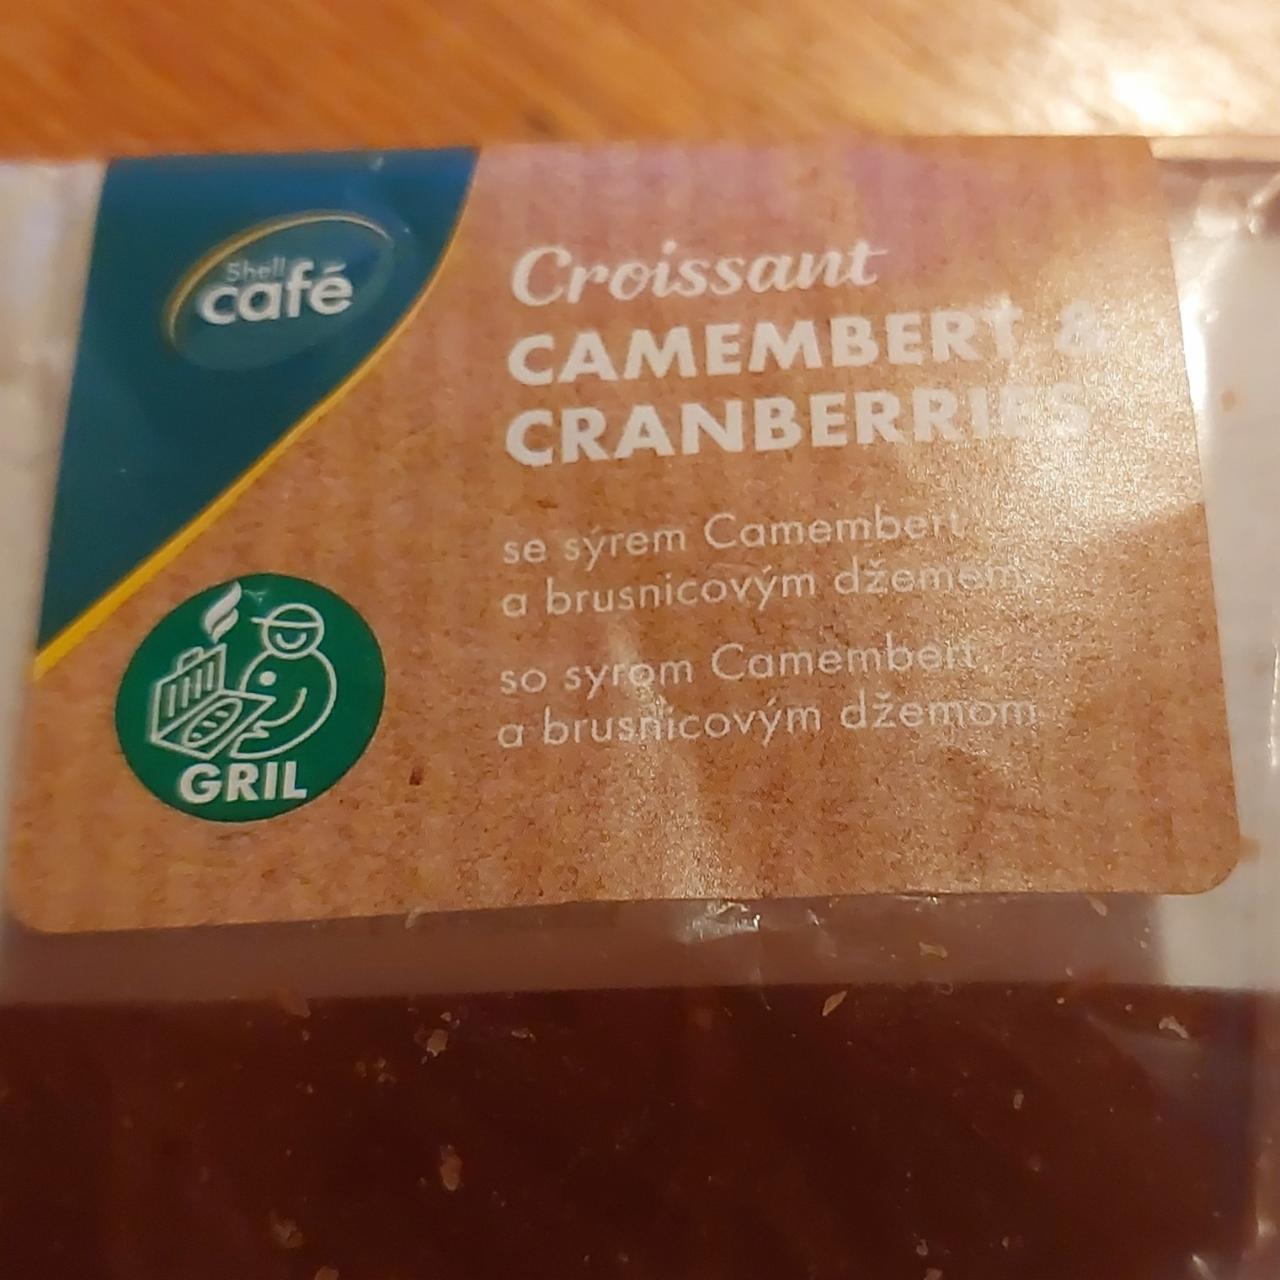 Fotografie - Croissant Camembert & Cranberries Shell café